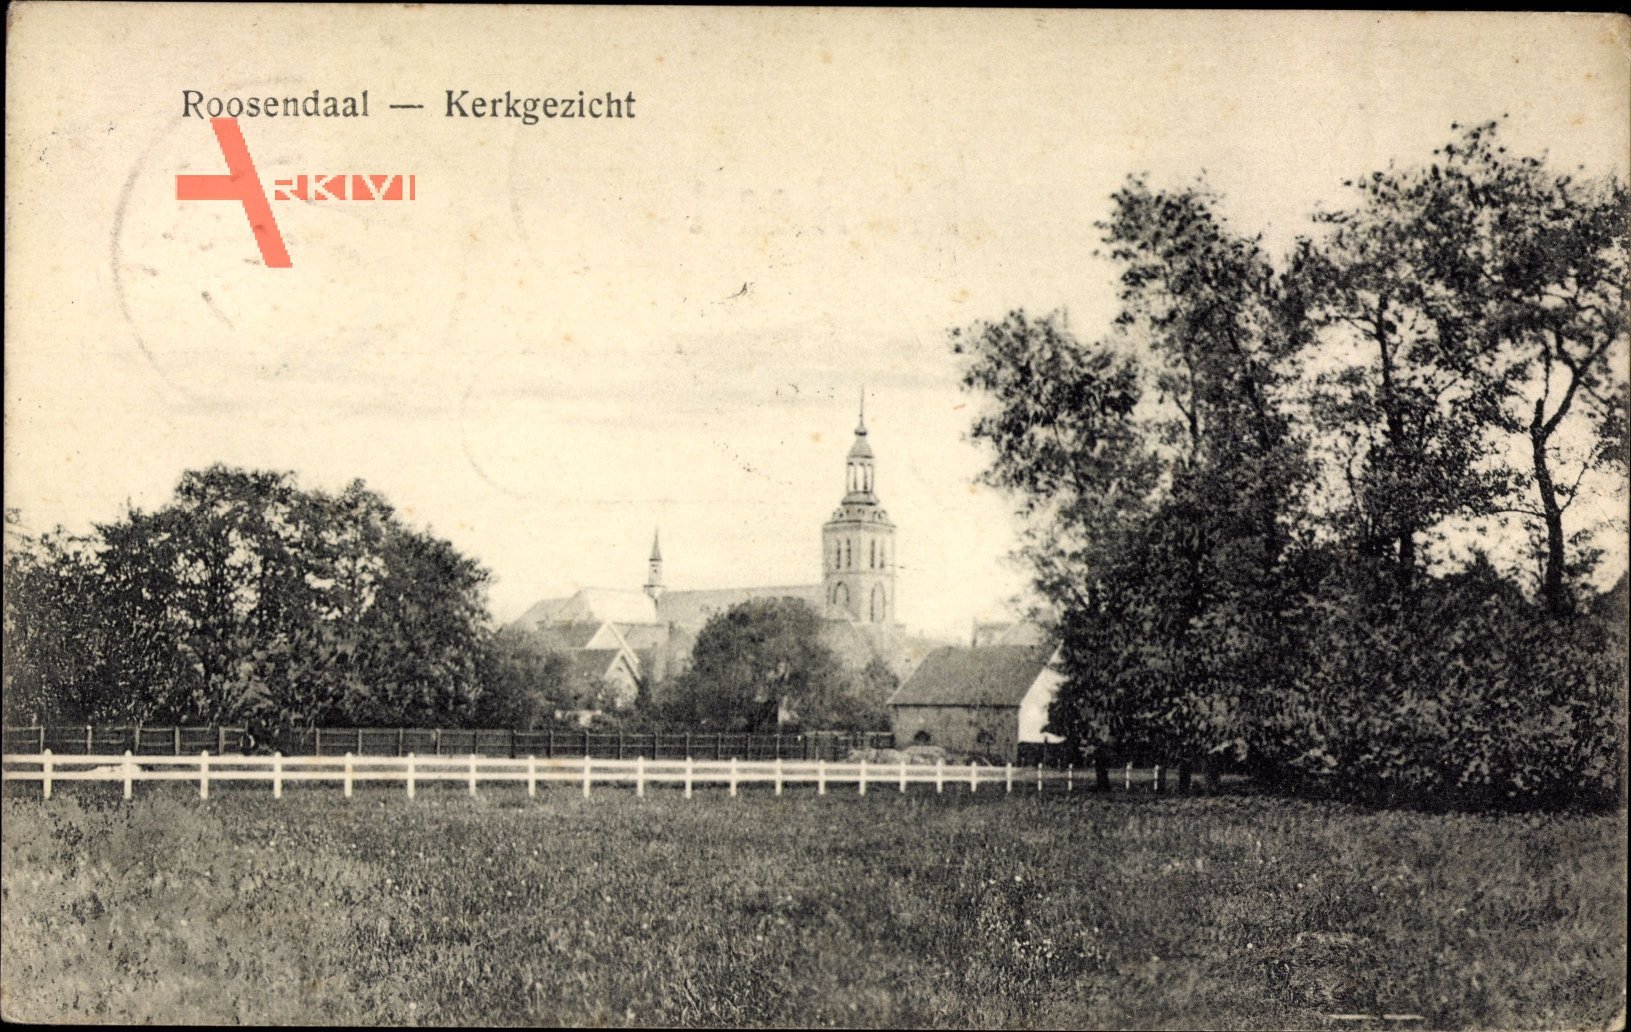 Roosendaal Nordbrabant, Kerkgezicht, Blick zur Kirche, Wiesen